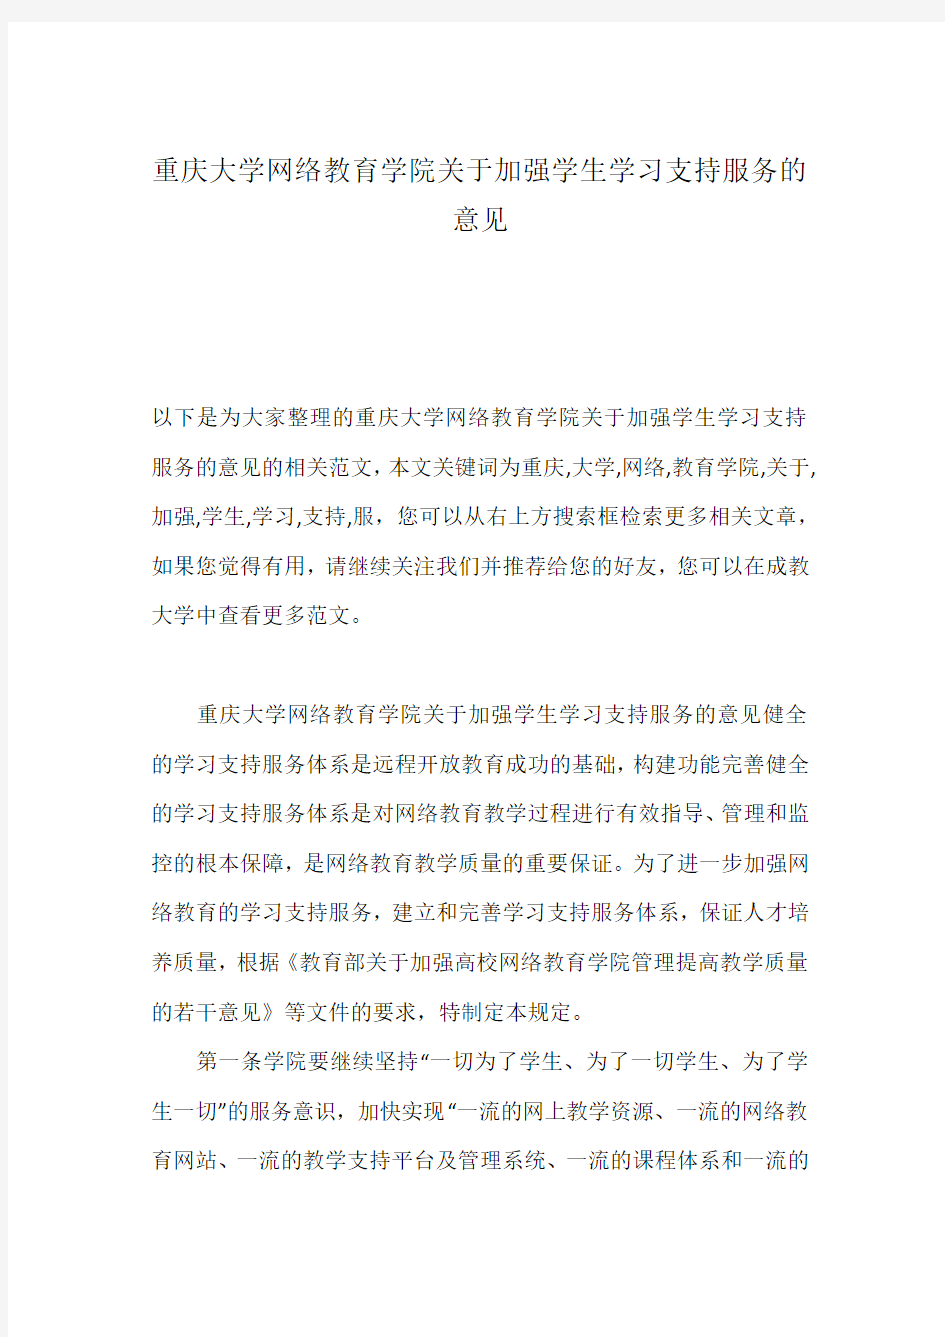 重庆大学网络教育学院关于加强学生学习支持服务的意见